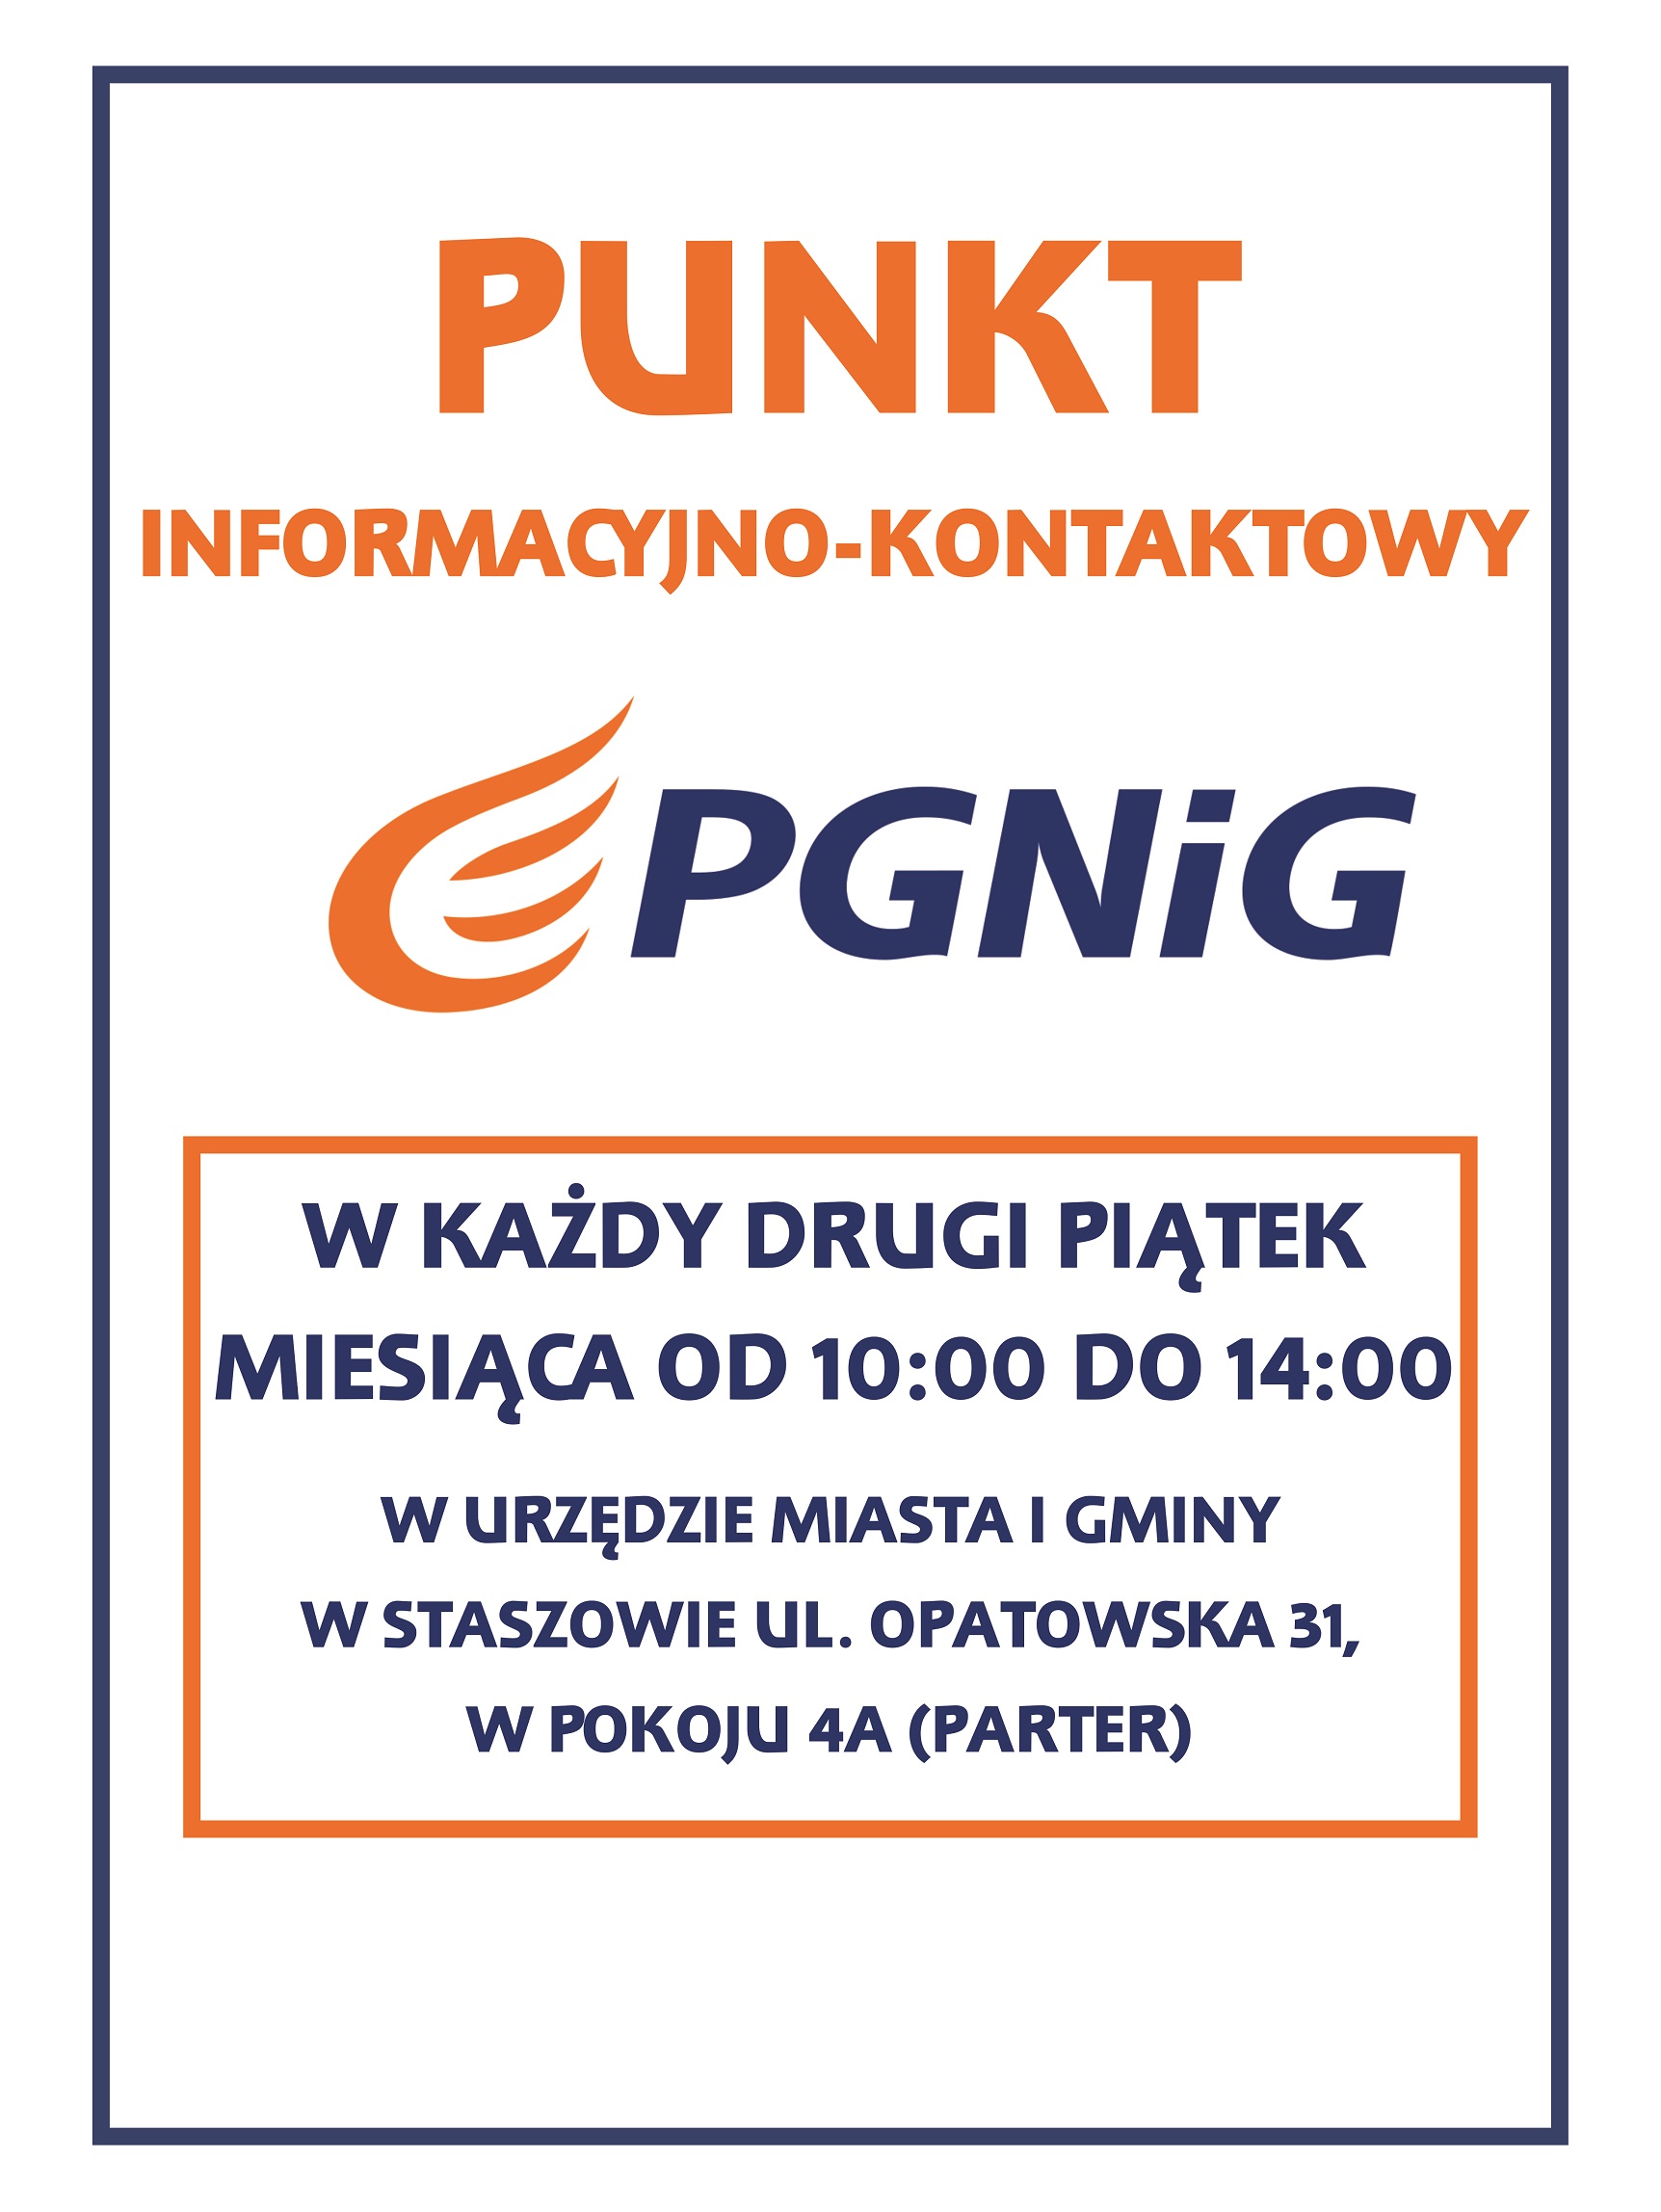 Plakat: W Urzędzie Miasta i Gminy w Staszowie rusza Punkt Informacyjno-Kontaktowy PGNiG. Zapraszamy do korzystania z niego już od godz. 10:00.